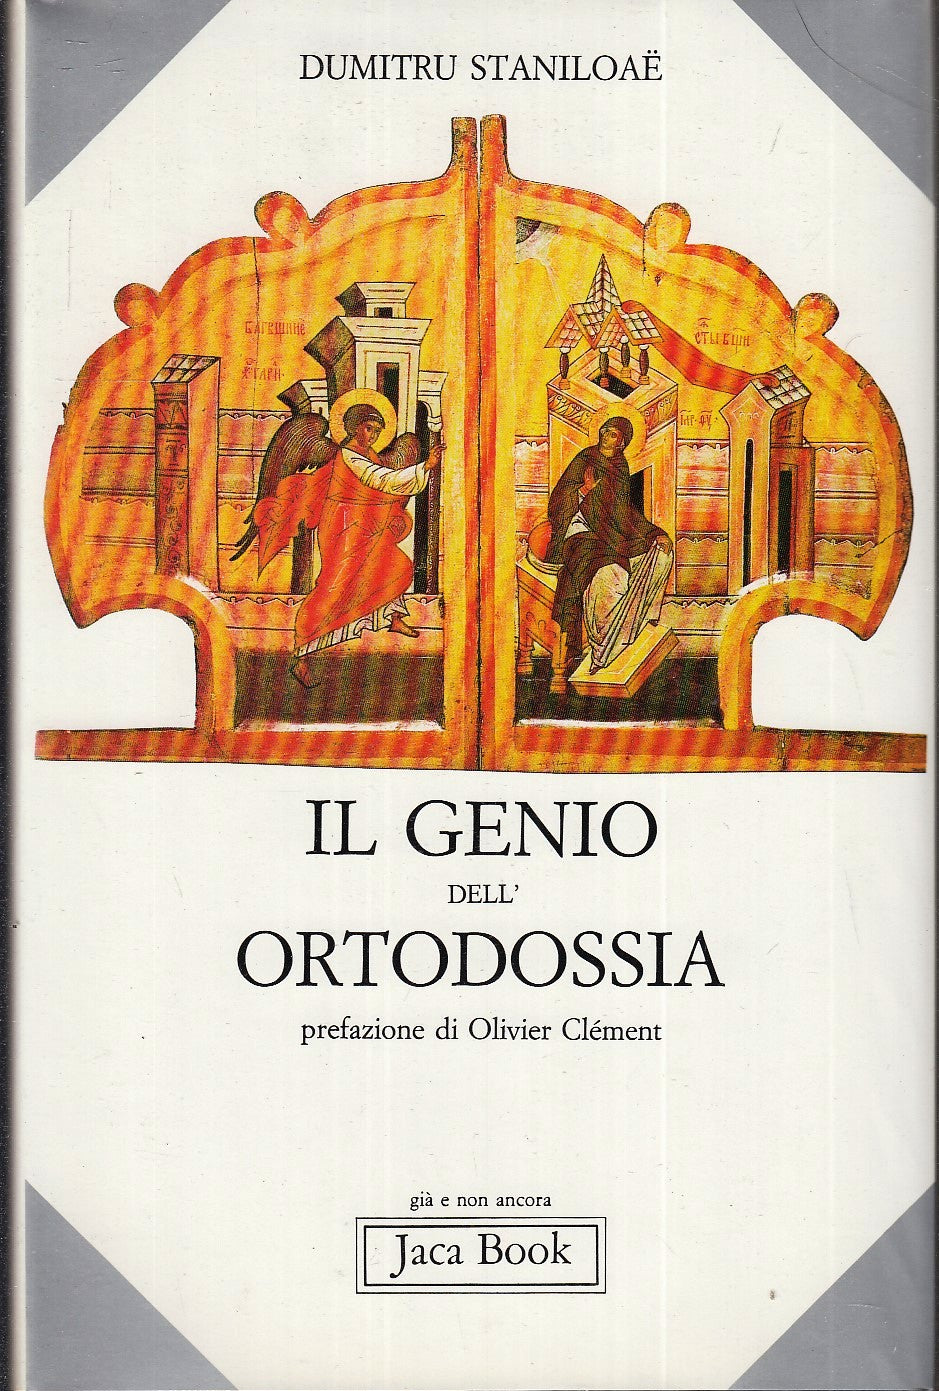 LD- IL GENIO DELL'ORTODOSSIA - DUMITRU STANILOAE' - JACA BOOK --- 1989- CS- XFS